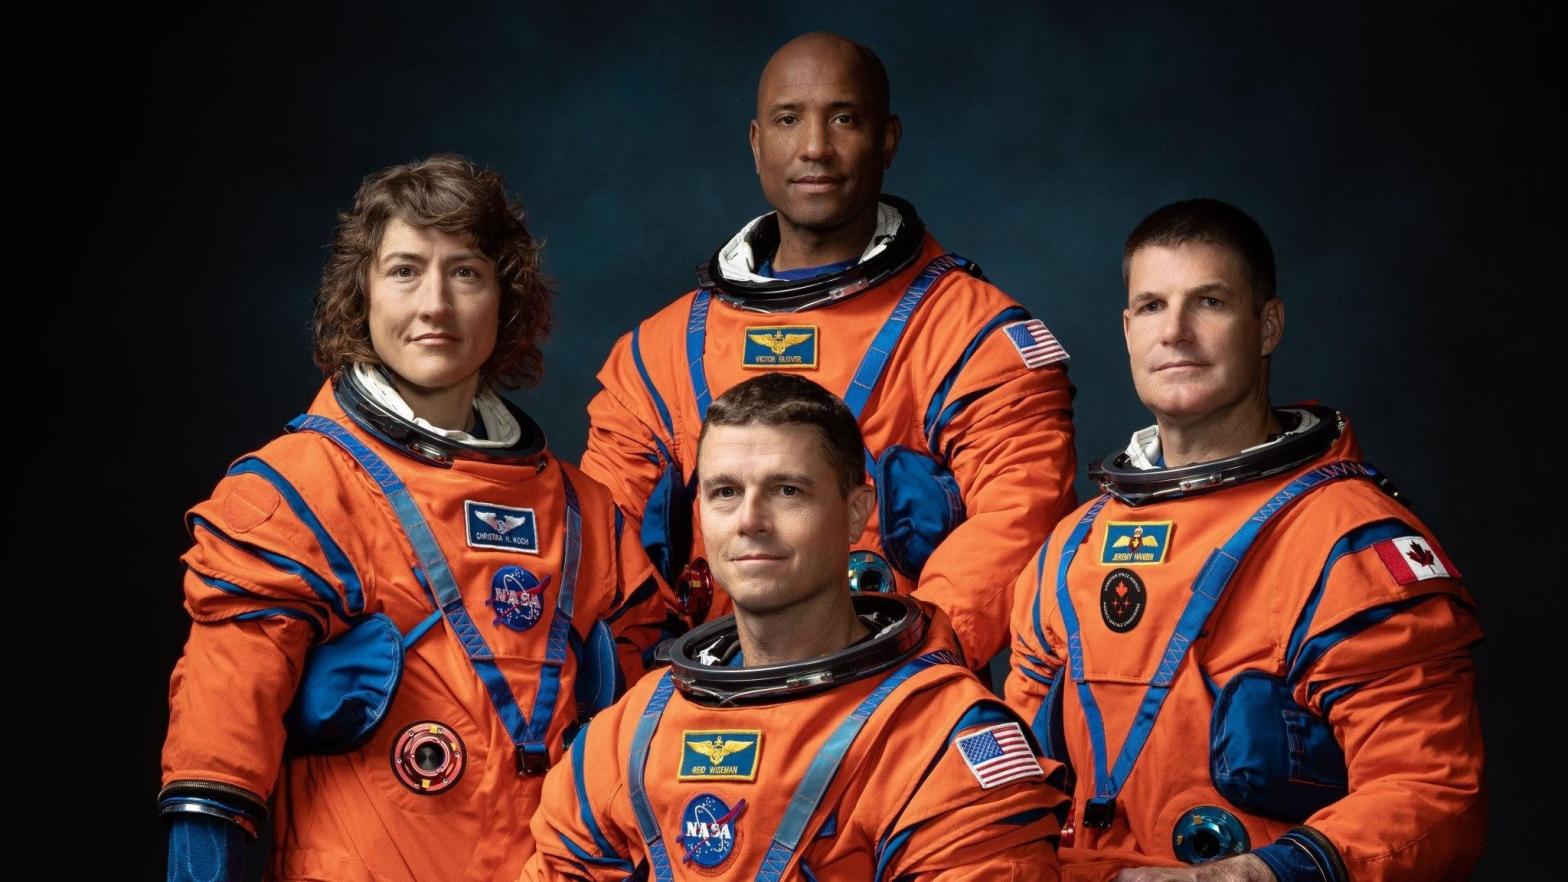 The Artemis 2 crew. (Photo: NASA)